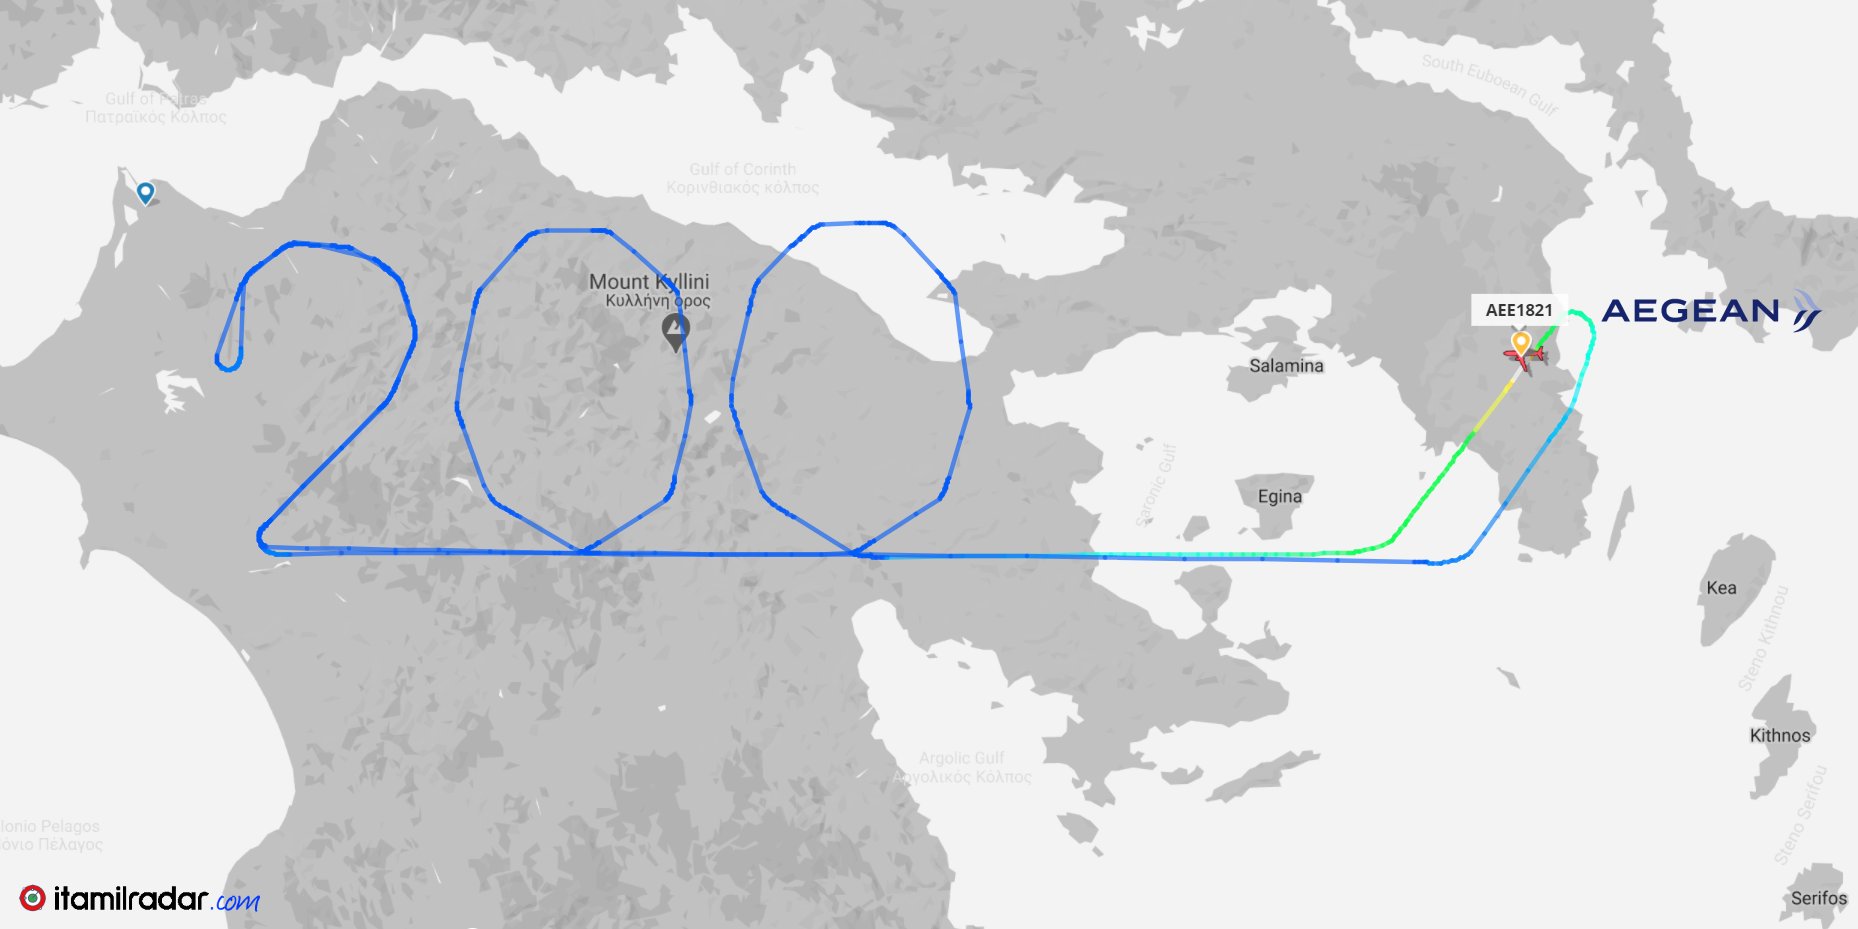 25 Μαρτίου: Η Aegean Airlines έγραψε το 200 στον αέρα πάνω από την Πελοπόννησο για τα διακόσια χρόνια της ελληνικής επανάστασης. 